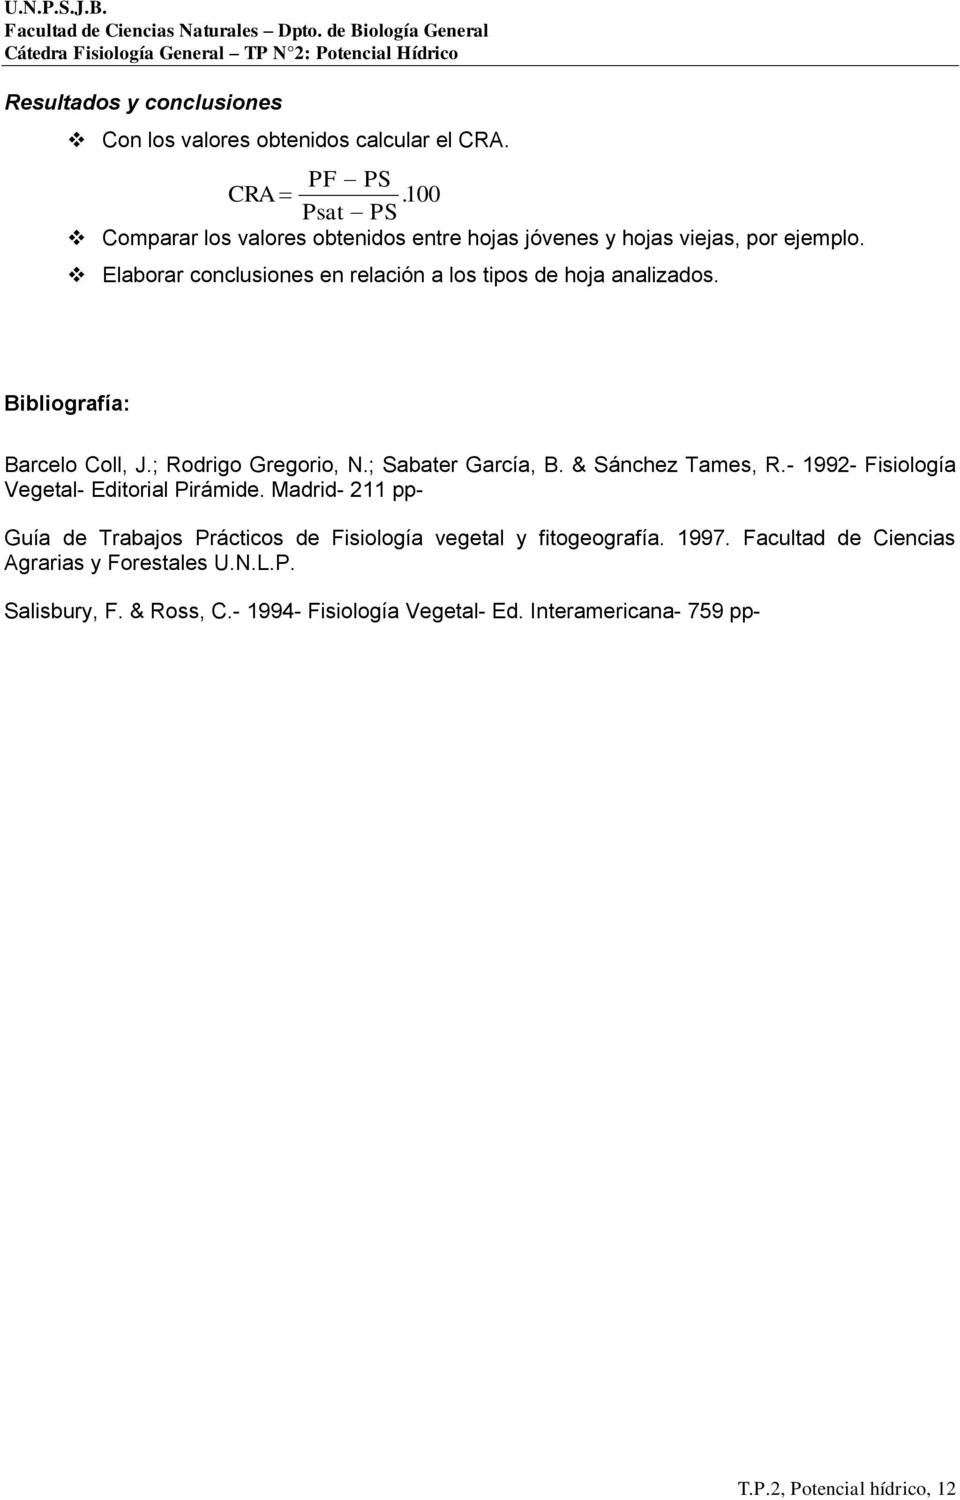 Bibliografía: Barcelo Coll, J.; Rodrigo Gregorio, N.; Sabater García, B. & Sánchez Tames, R.- 1992- Fisiología Vegetal- Editorial Pirámide.